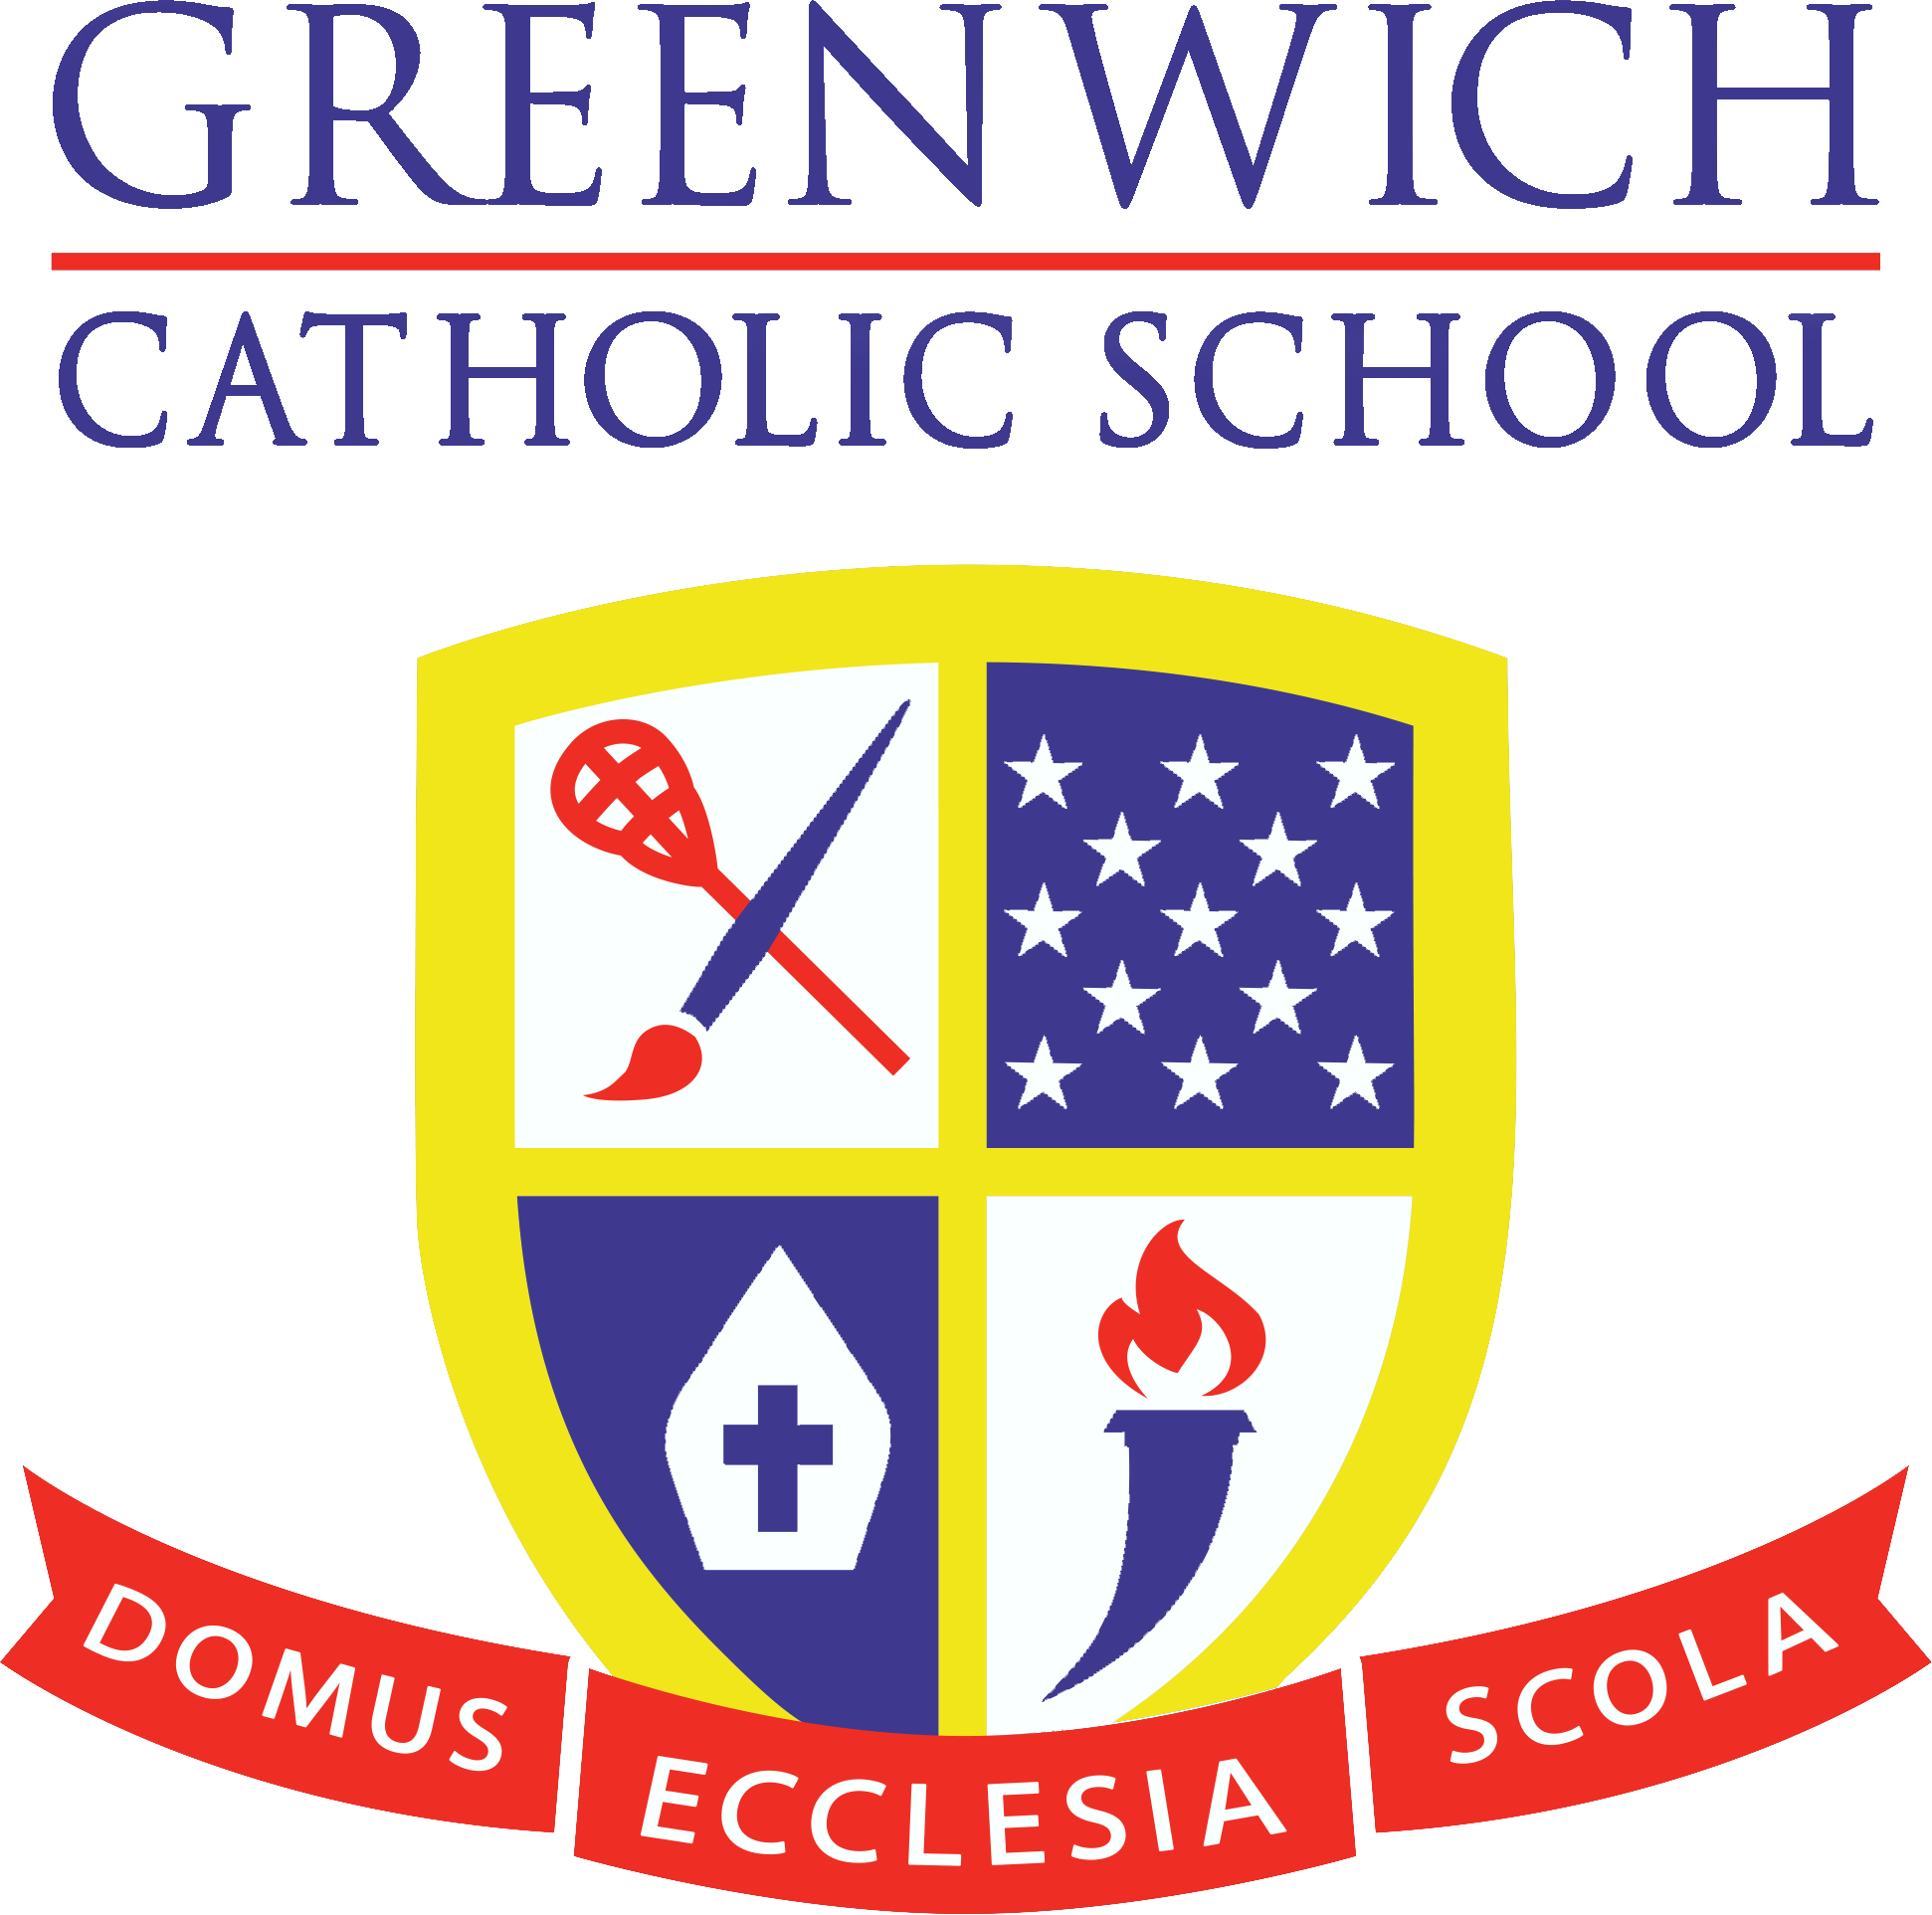 Greenwich Catholic School